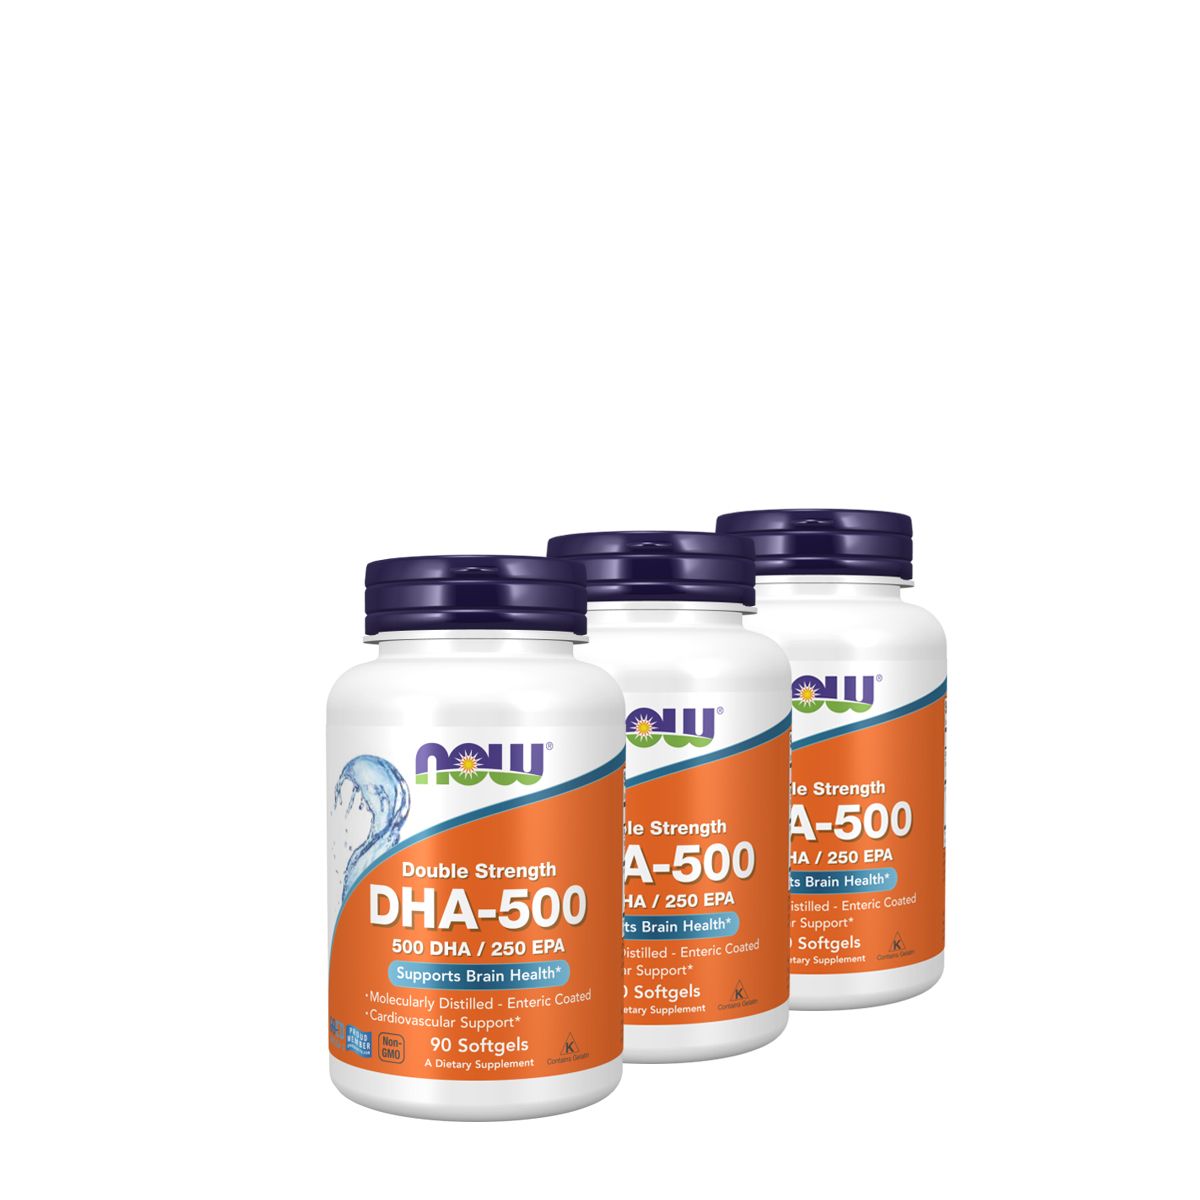 DHA és EPA omega-3 zsírsavak, Now DHA 500, 3x90 gélkapszula